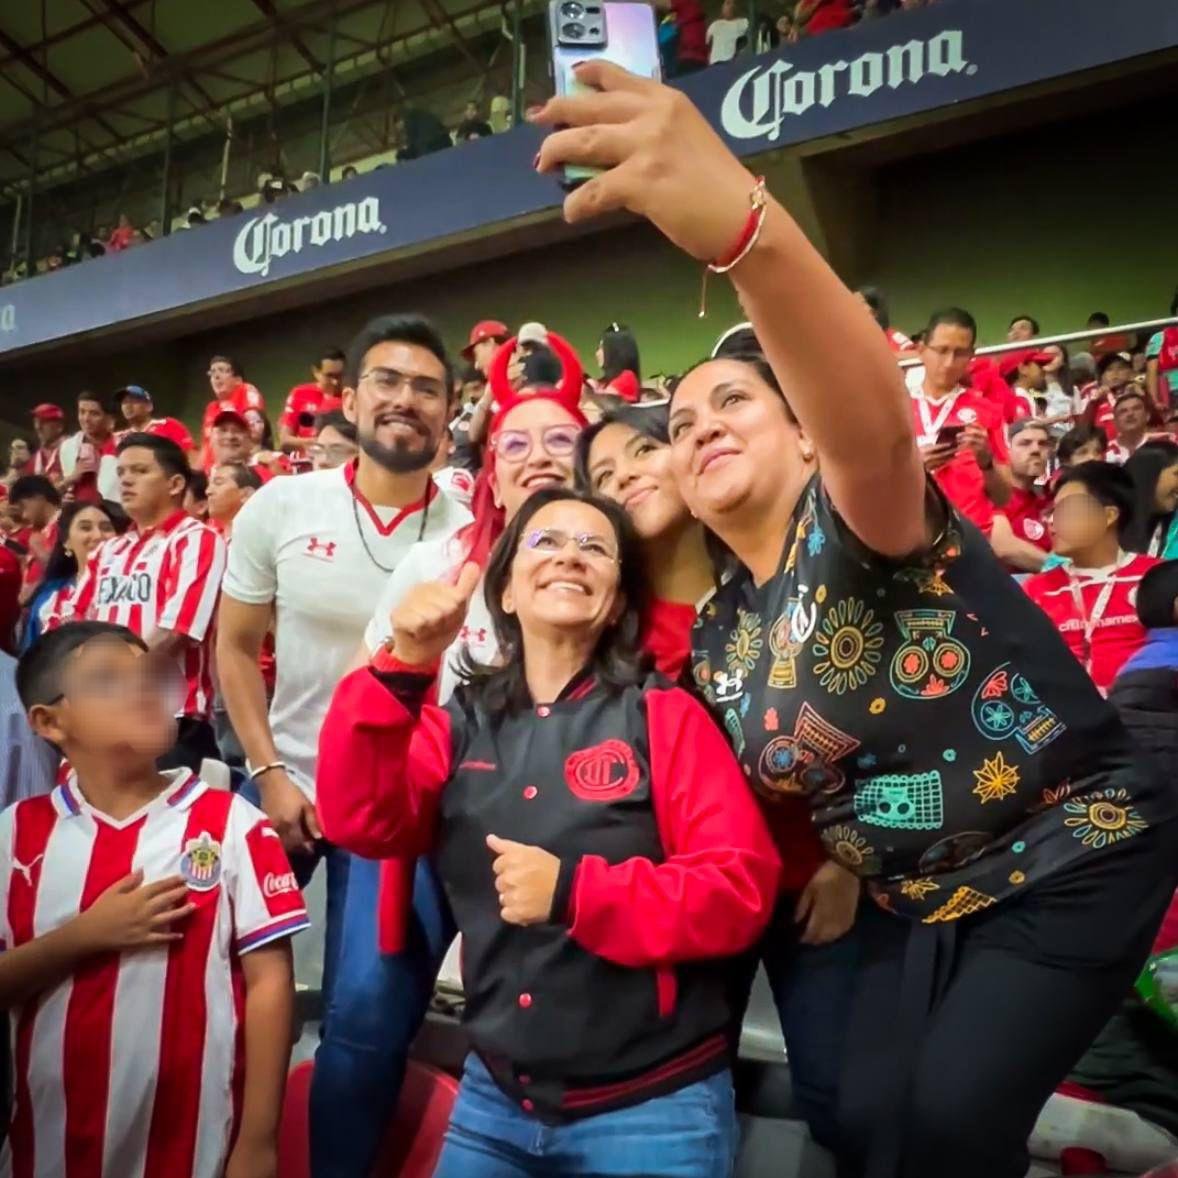 ¡Con @ManuelVilchisMV nos lanzamos al estadio para apoyar al Toluca! ⚽️ El ánimo del Nemesio Díez es inigualable, merecíamos ganar 😢 Por siempre #SomosDiablos

Vota por la Coalición Fuerza y Corazón por el Estado de México #PaolaSíResuelve #PaolaJiménez #Diputada #Toluca…